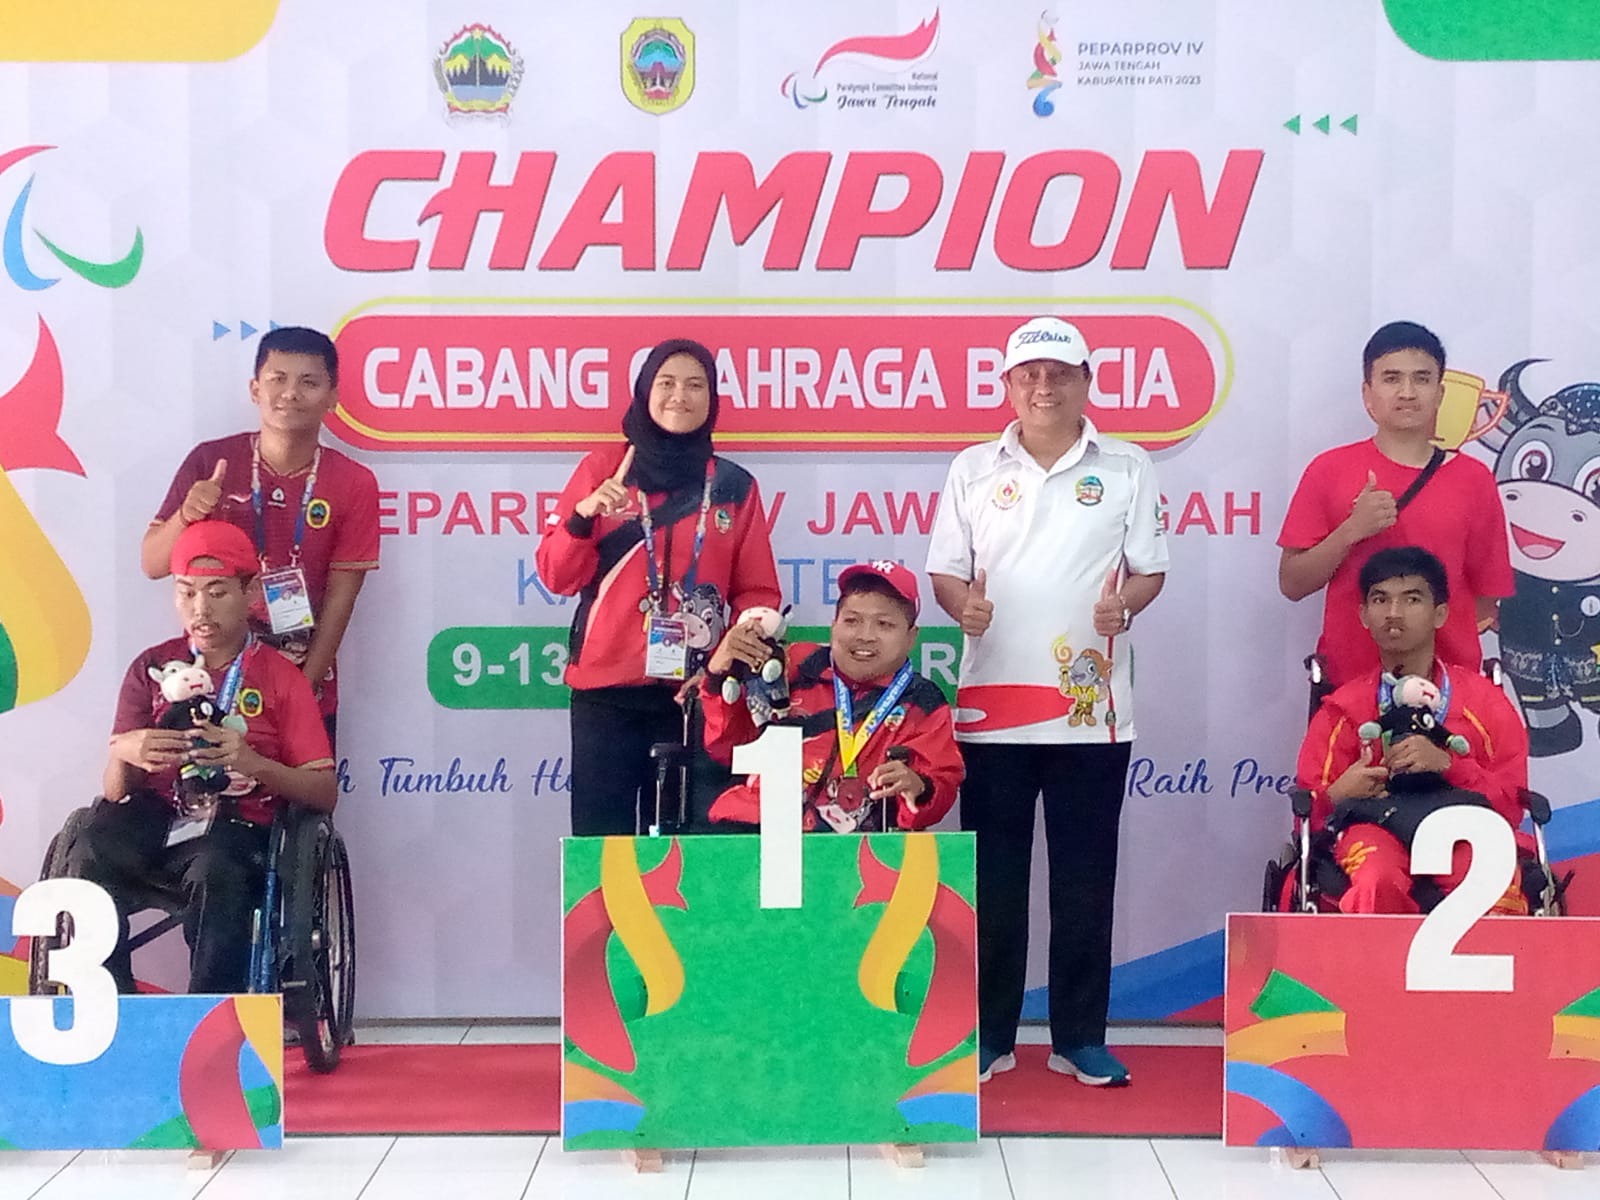 Peparprov Iv Emas Cabor Boccia Jadi Milik Atlet Banyumas Pemerintah Provinsi Jawa Tengah